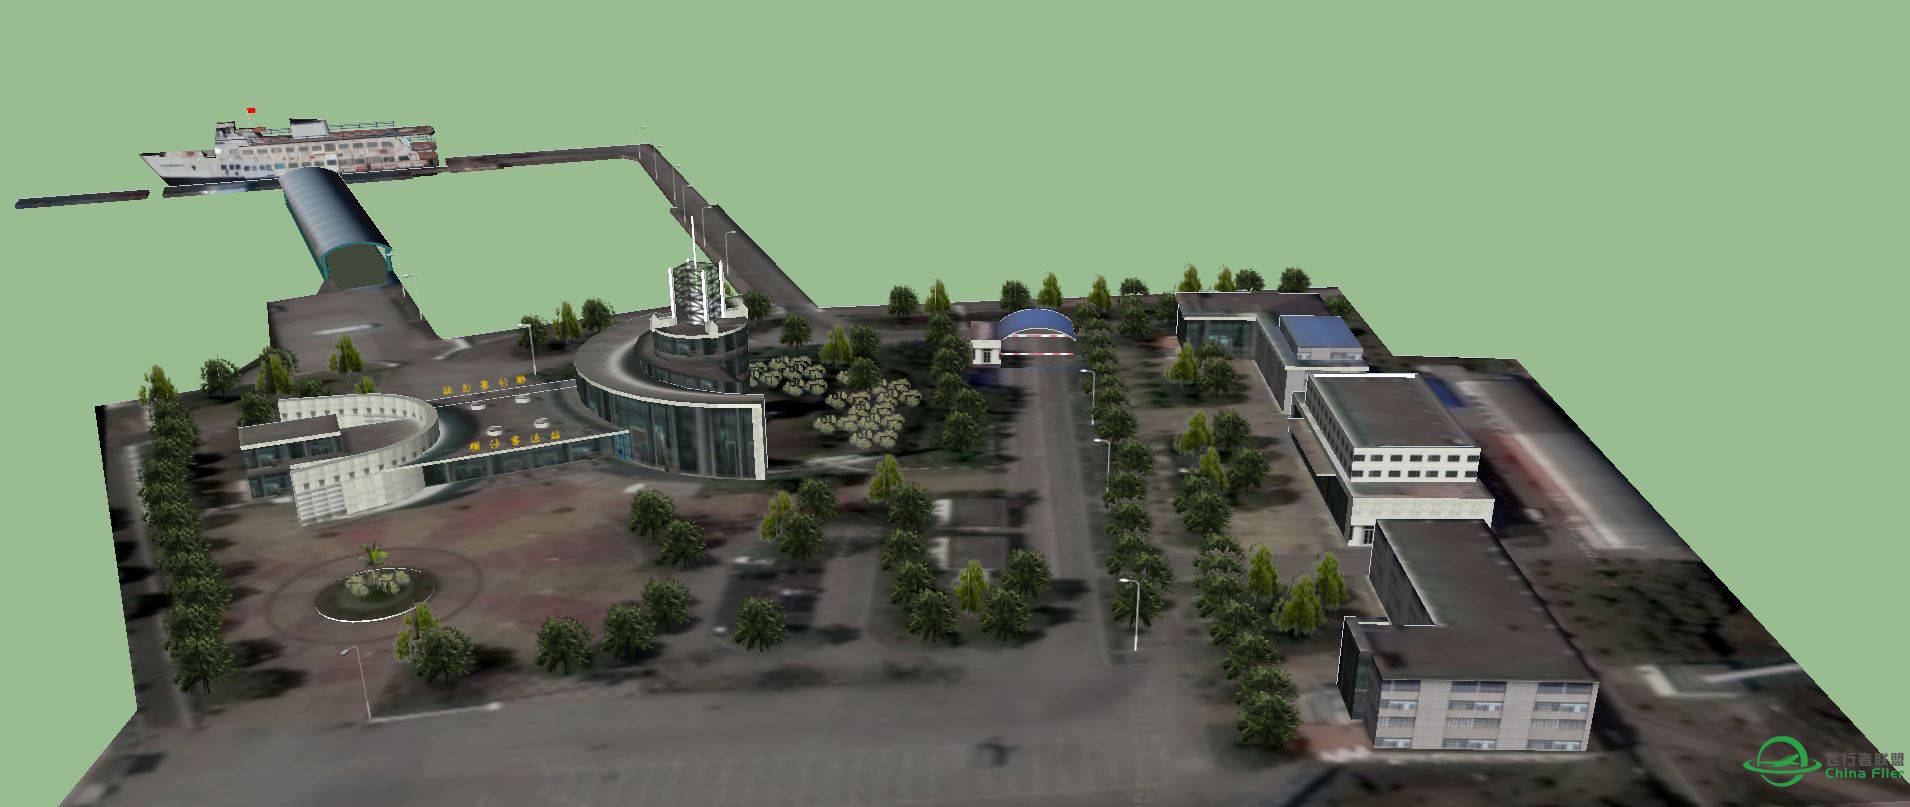 横沙岛地景的横沙客运码头建模完成-3690 